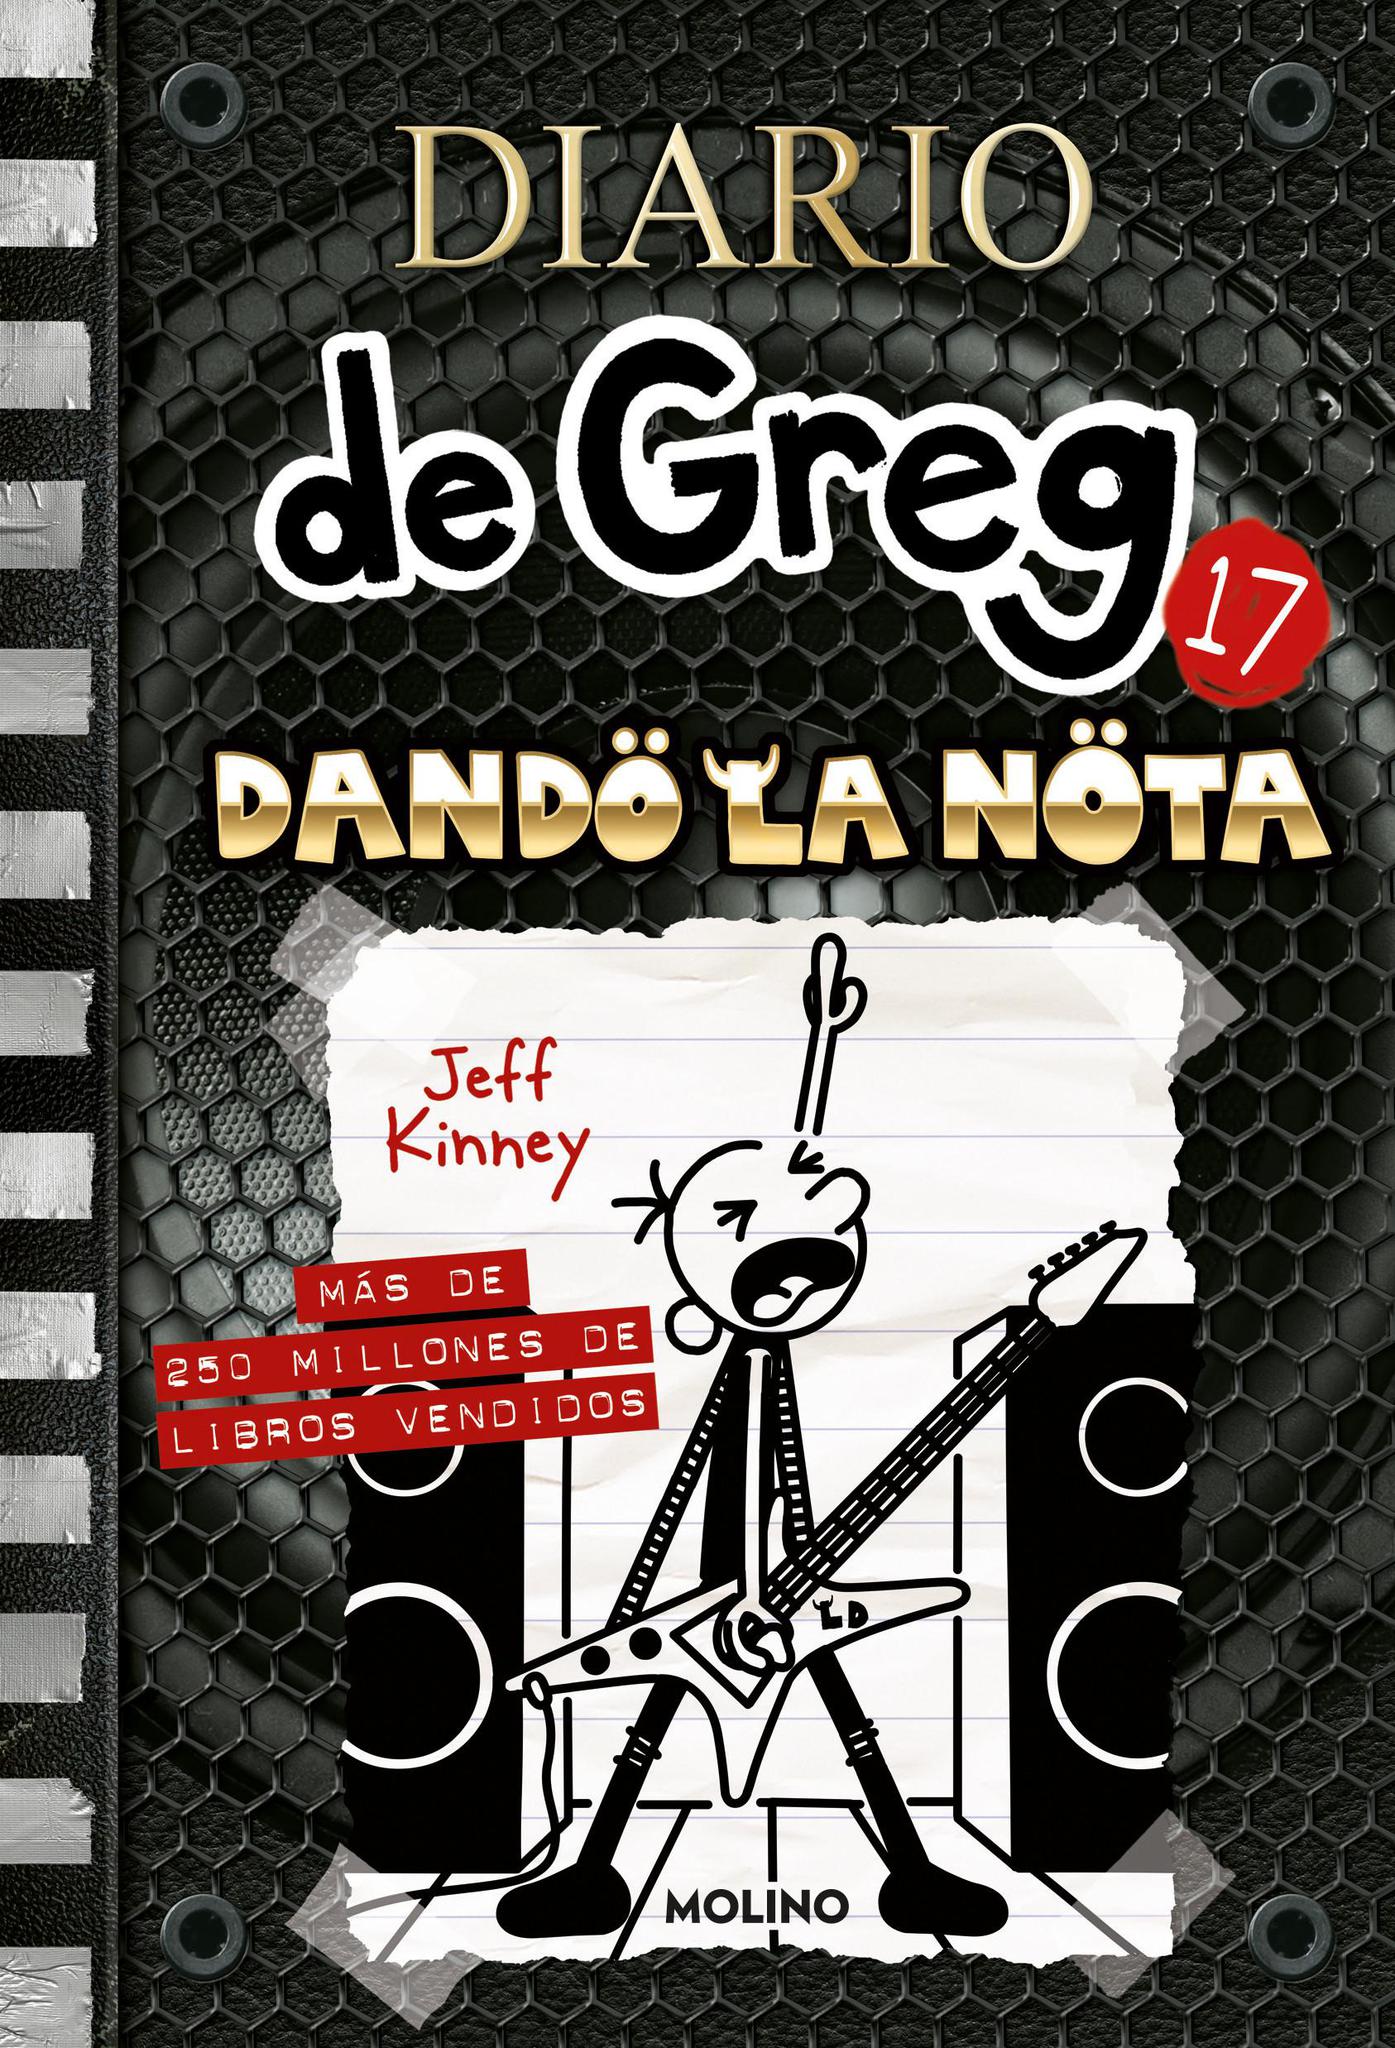 Diario de Greg 17. Dando la Nota - Jeff Kinney